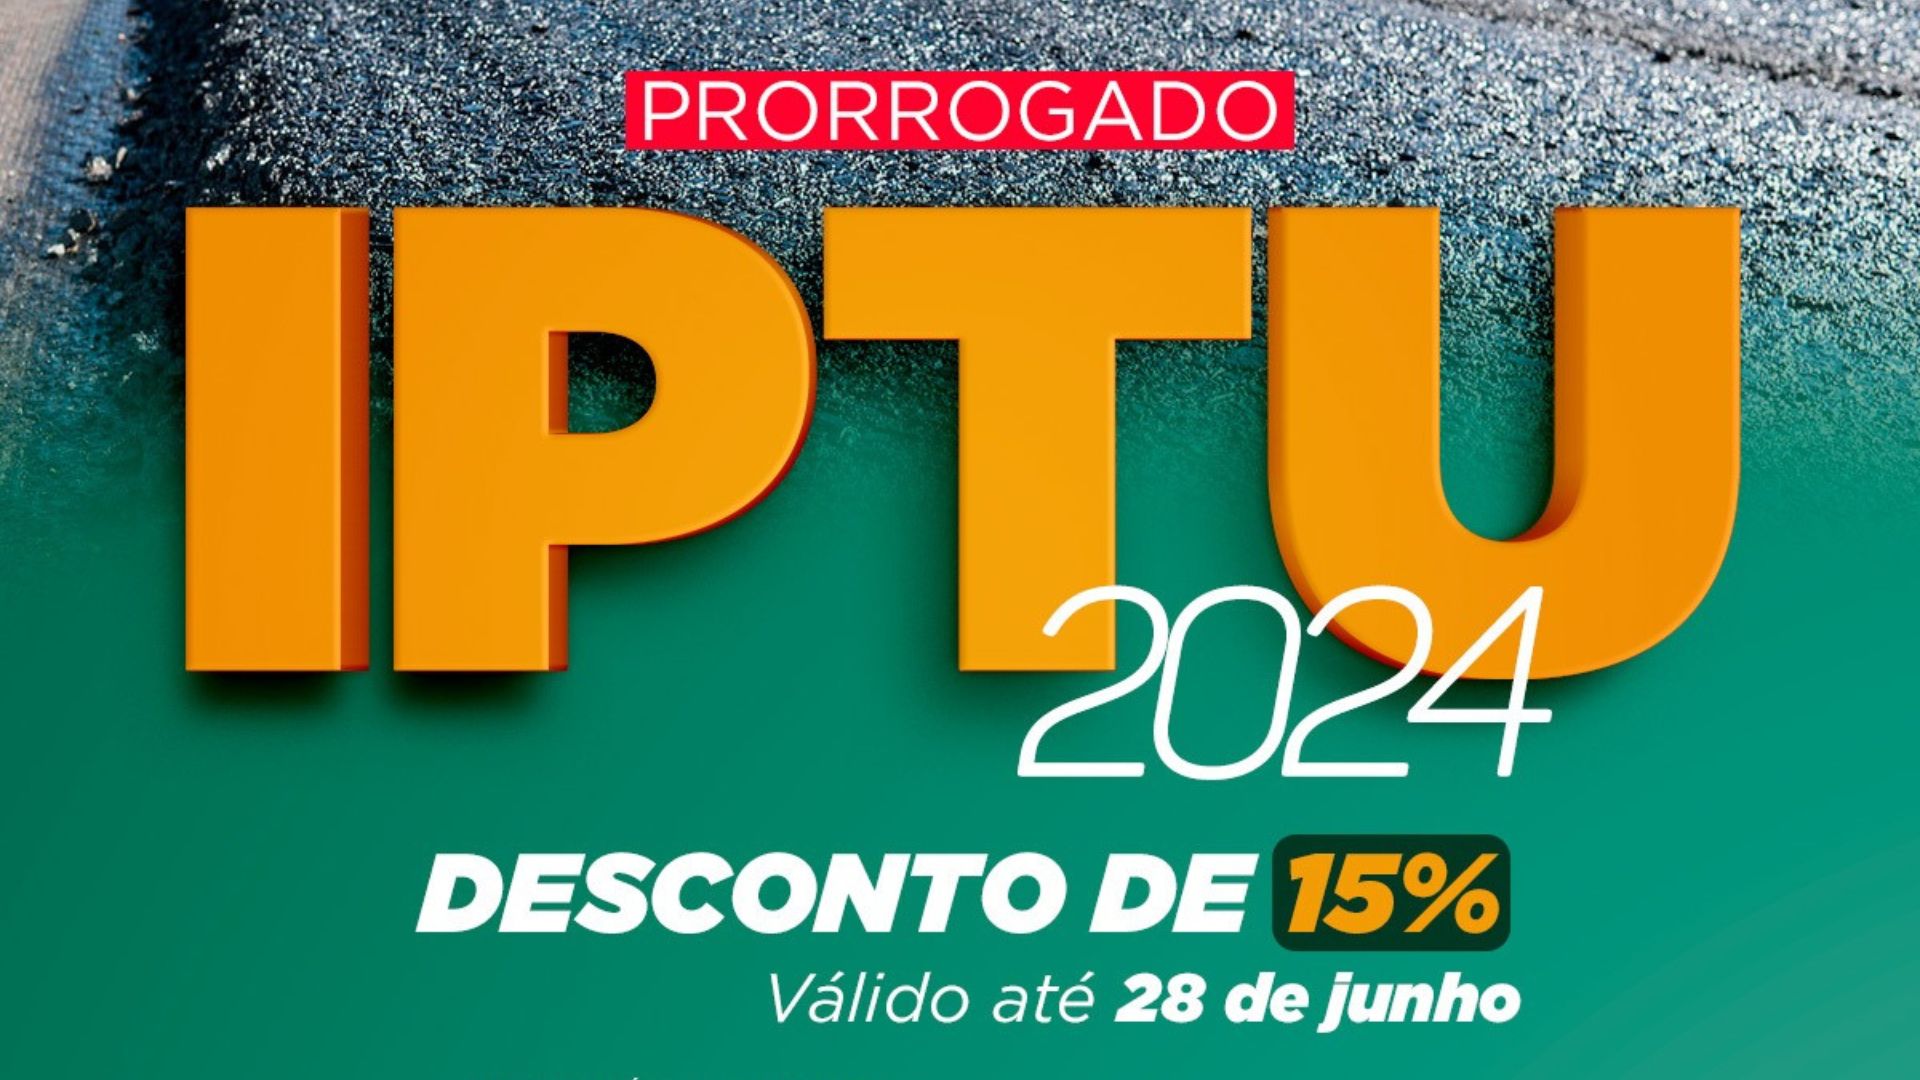 IPTU 2024